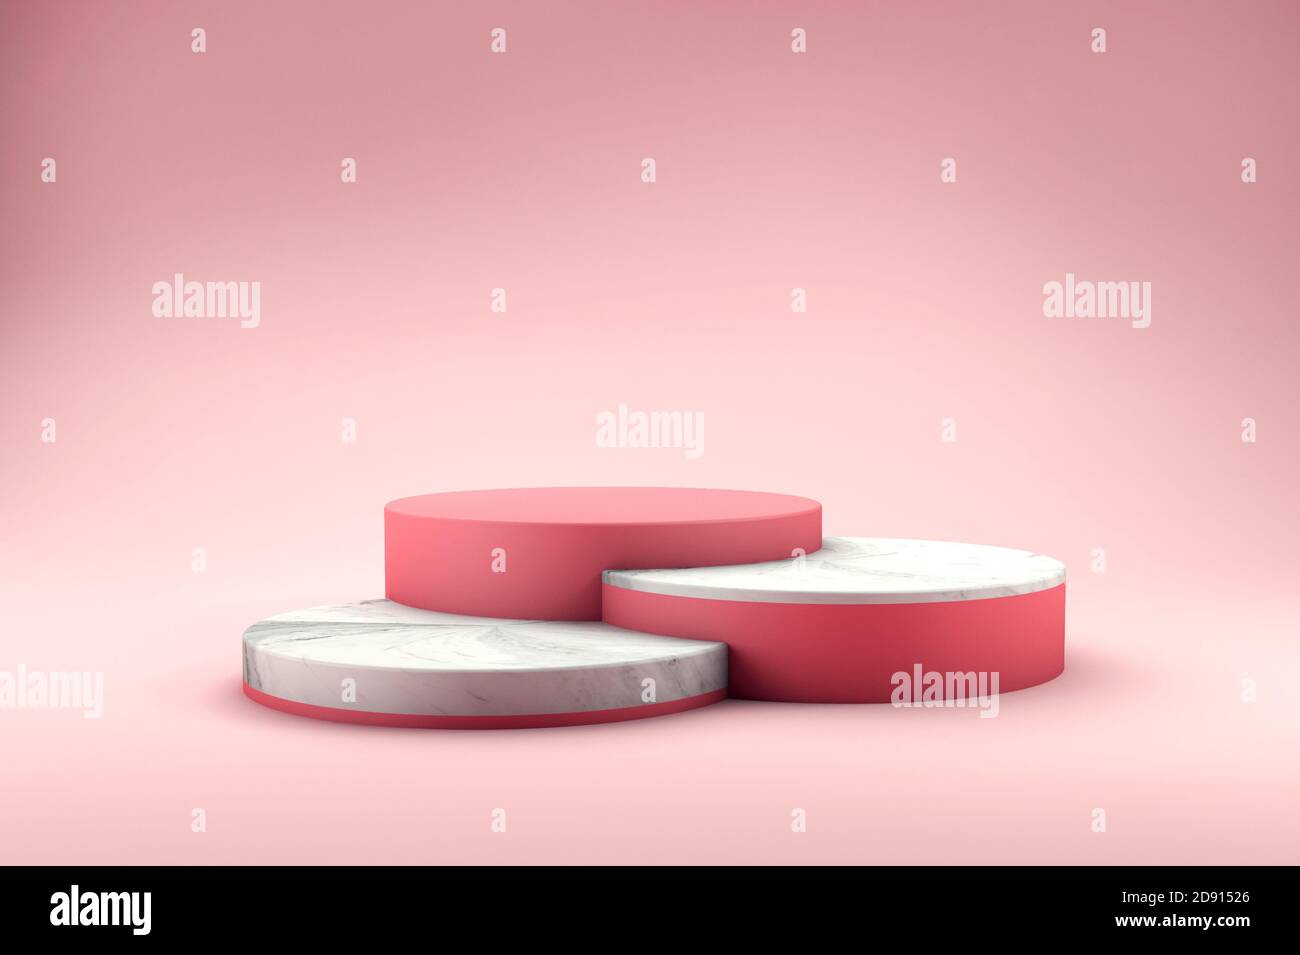 Rendu 3D de trois podiums roses et en marbre sur fond rose pour la scène de présentation du produit. Plate-forme d'affichage Banque D'Images